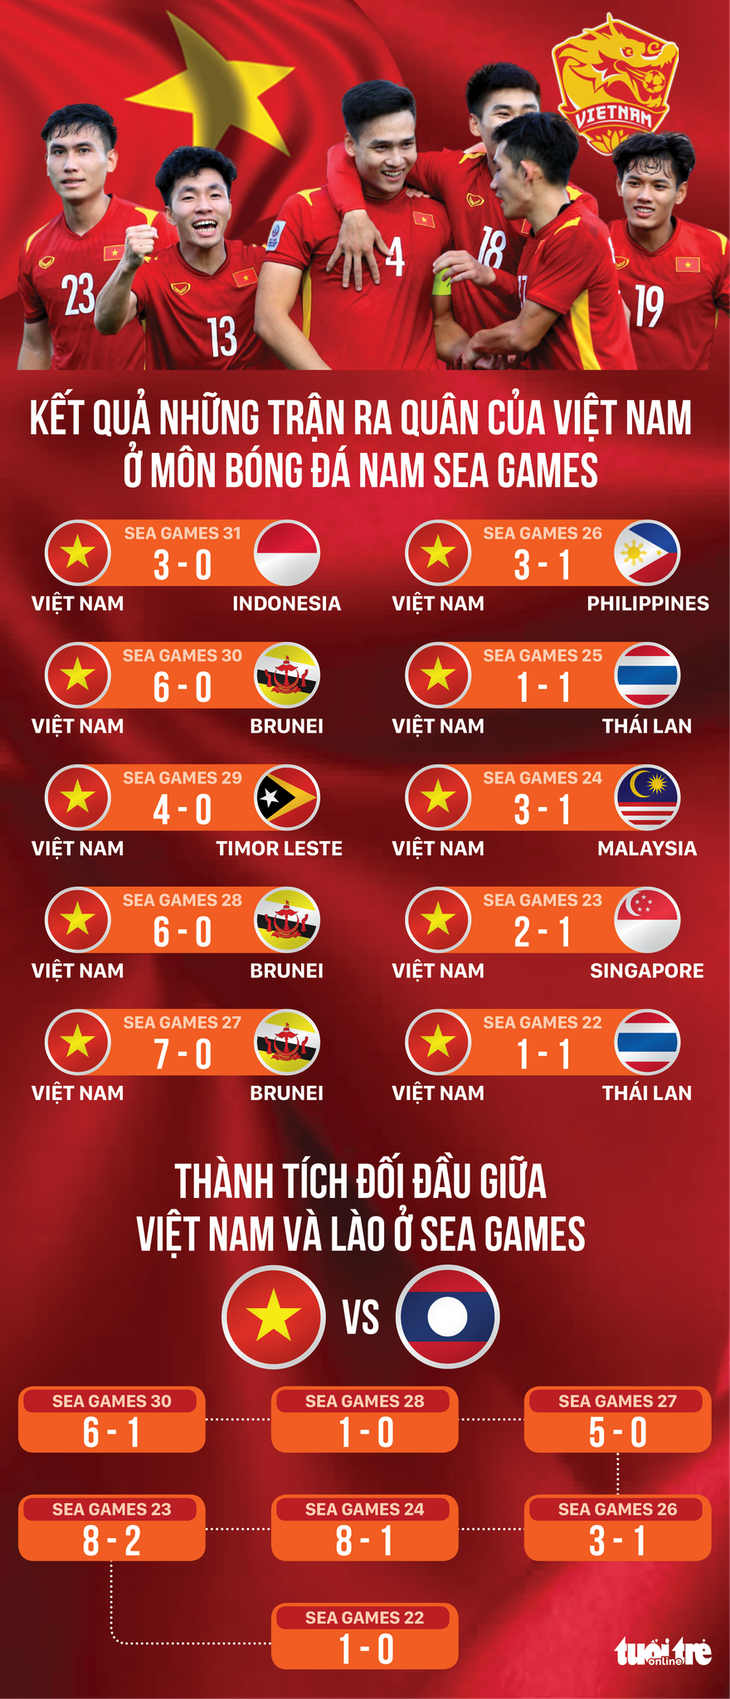 20 năm, Việt Nam bất bại ở trận ra quân SEA Games - Ảnh 1.